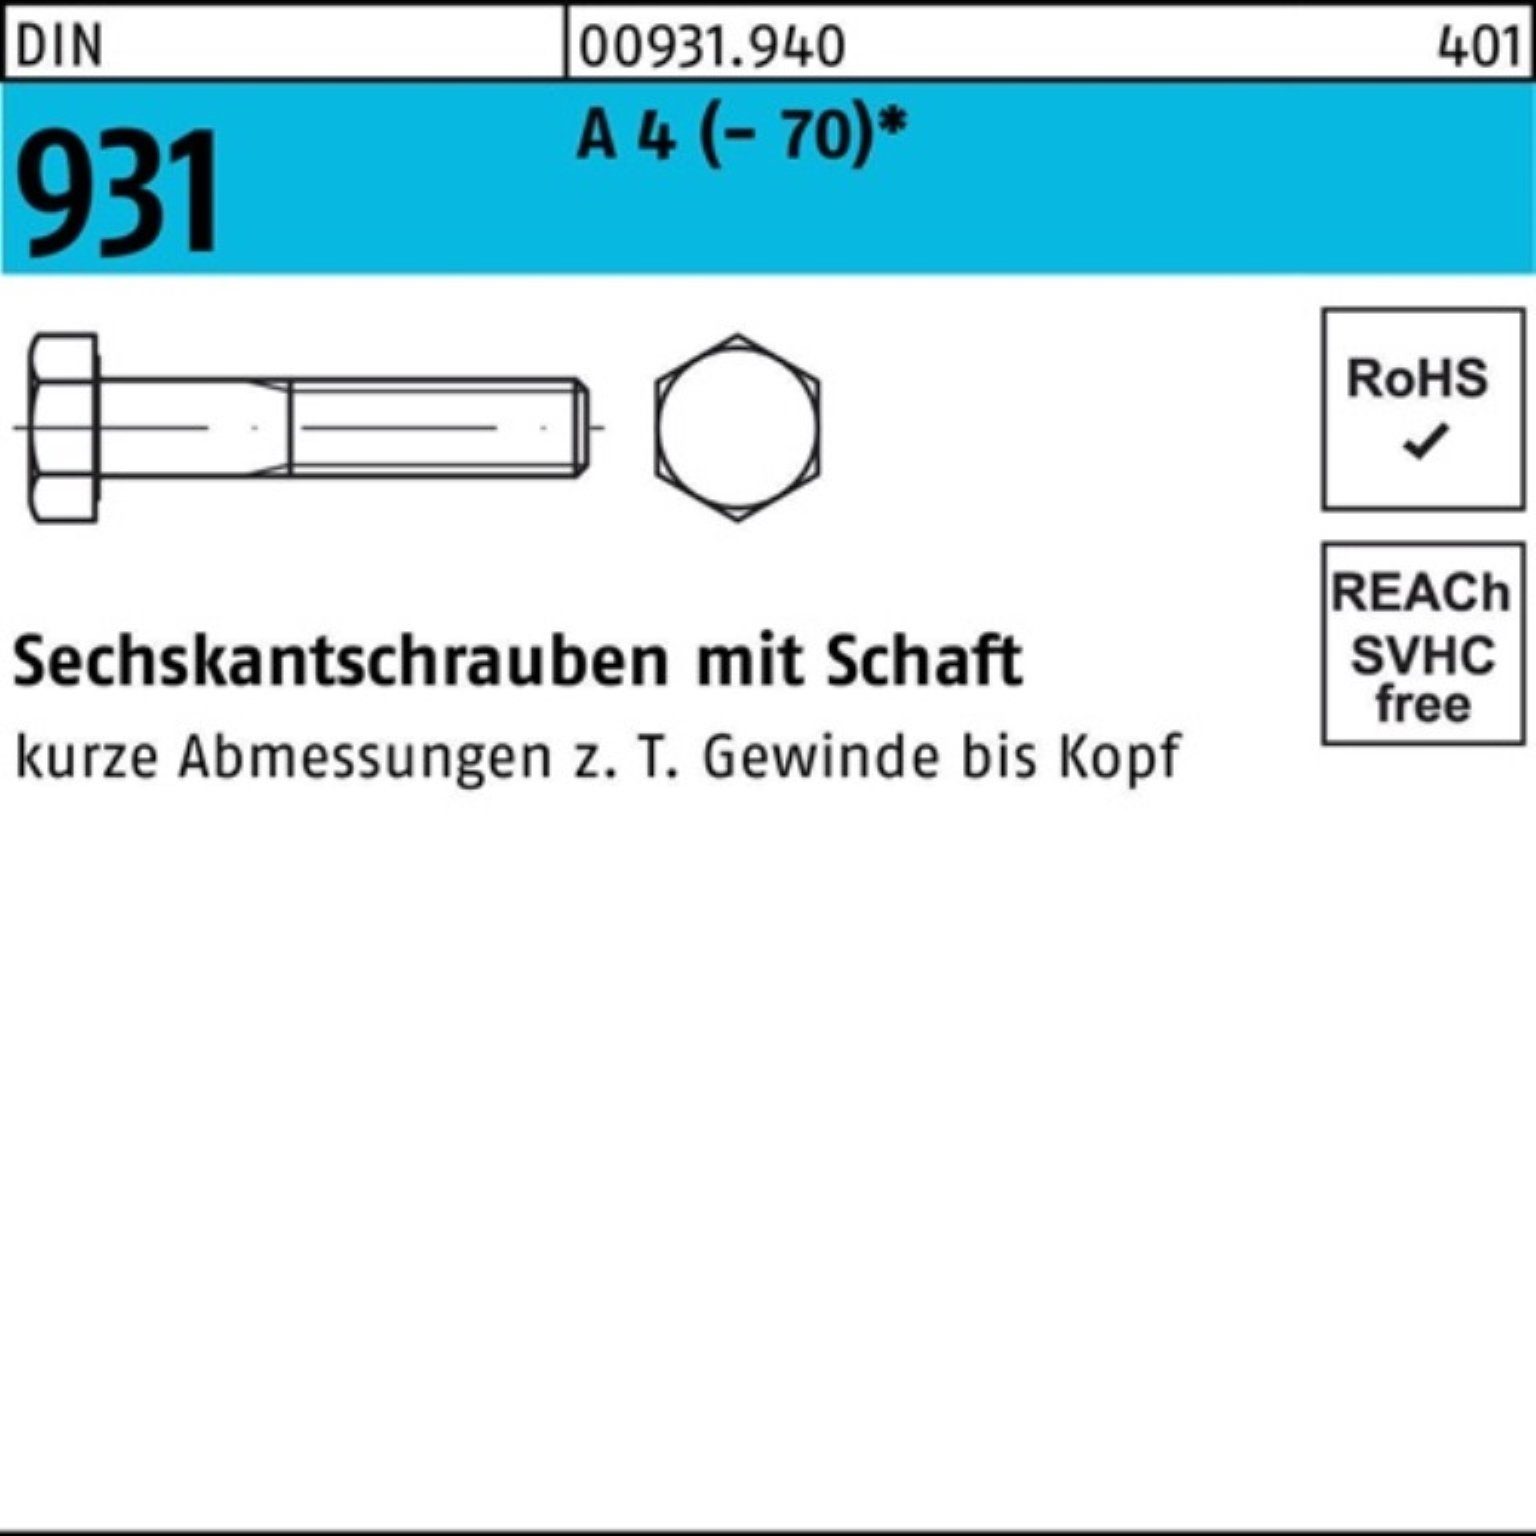 Reyher Sechskantschraube 100er Pack Sechskantschraube M8x DIN 50 Schaft 4 (70) 931 A 120 Stü